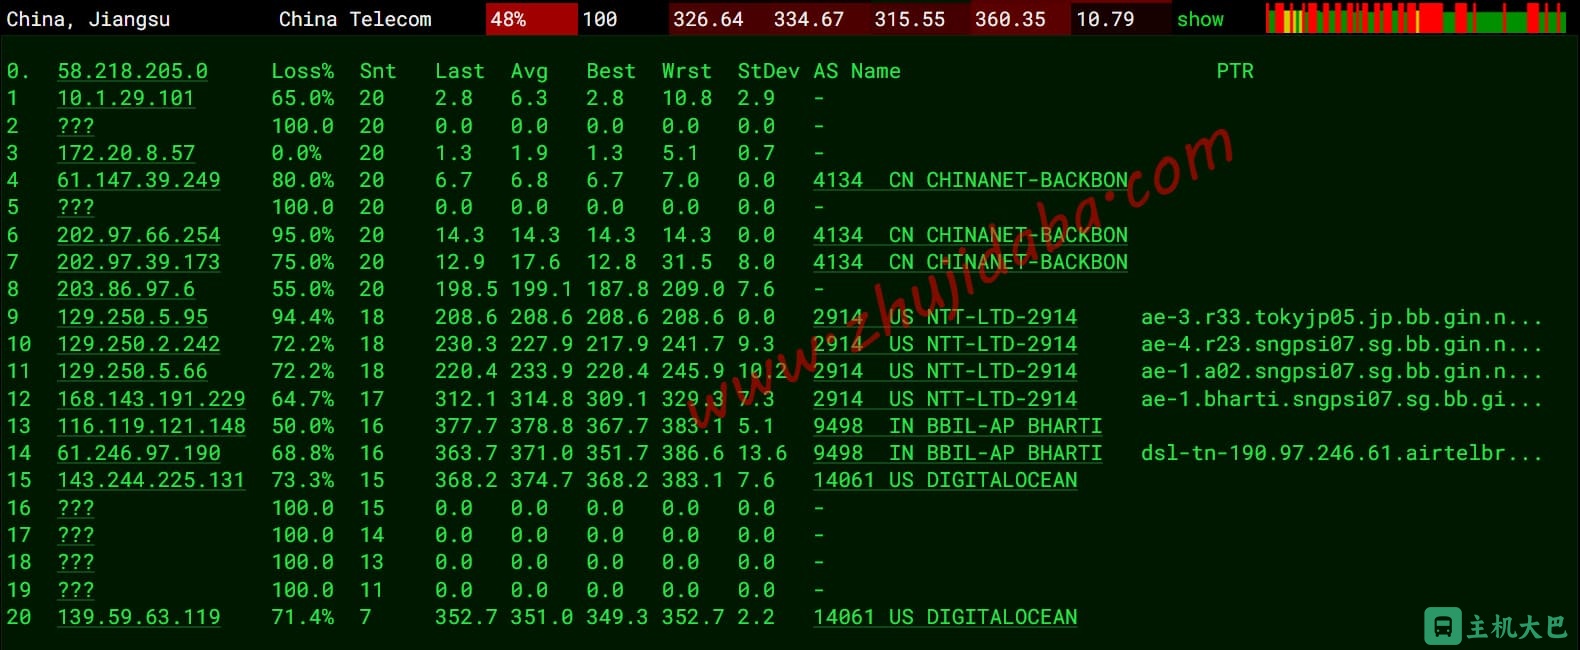 DigitalOcean：1c-1gb-blr1 印度班加罗尔主机测评